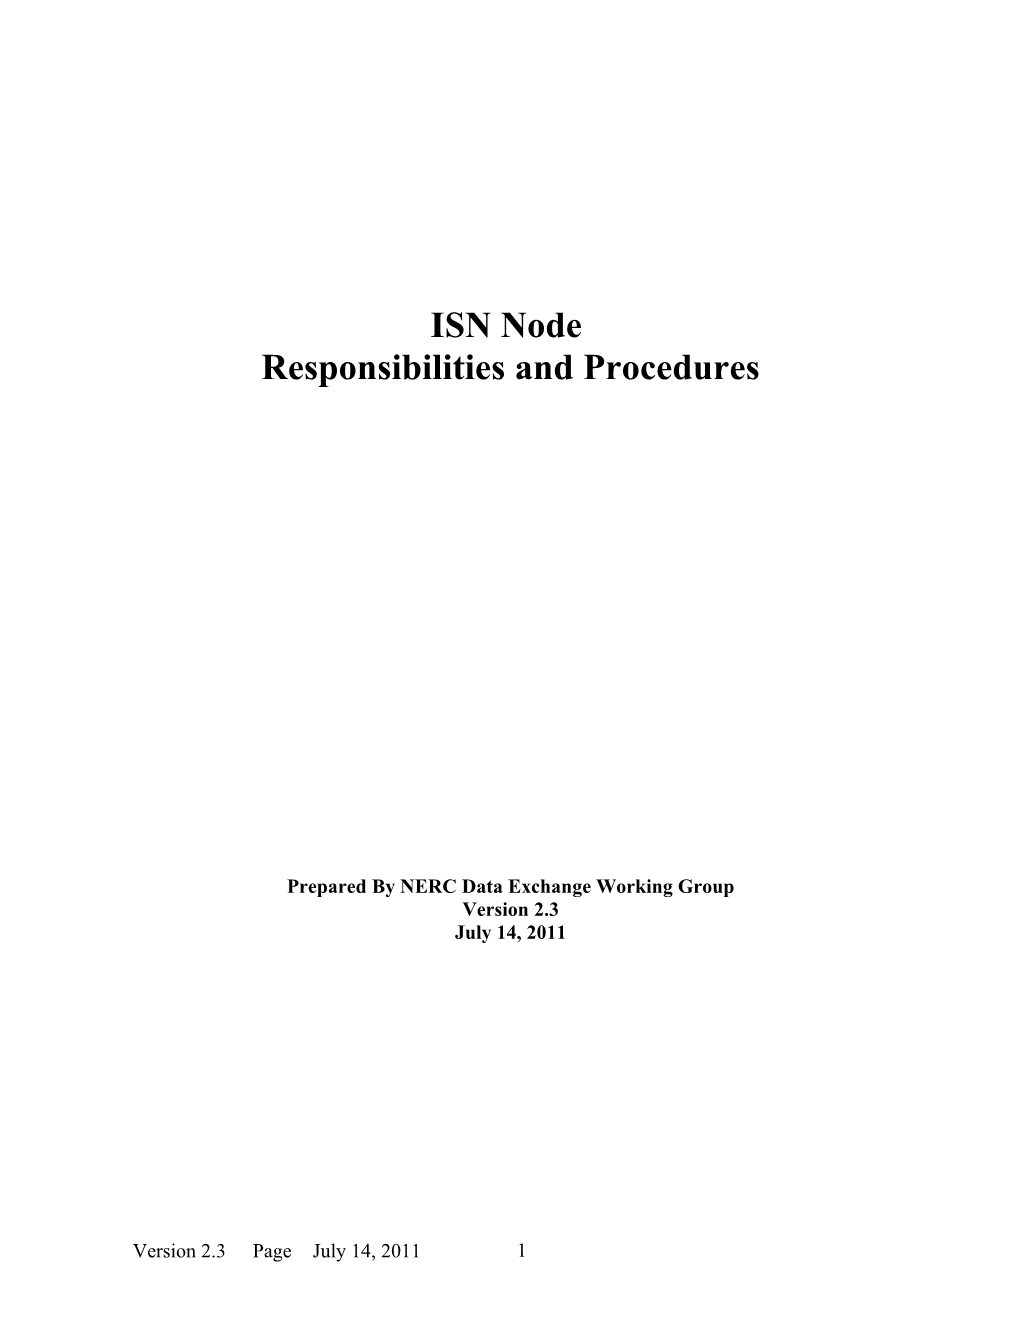 ISN Node Responsibilities and Procedures